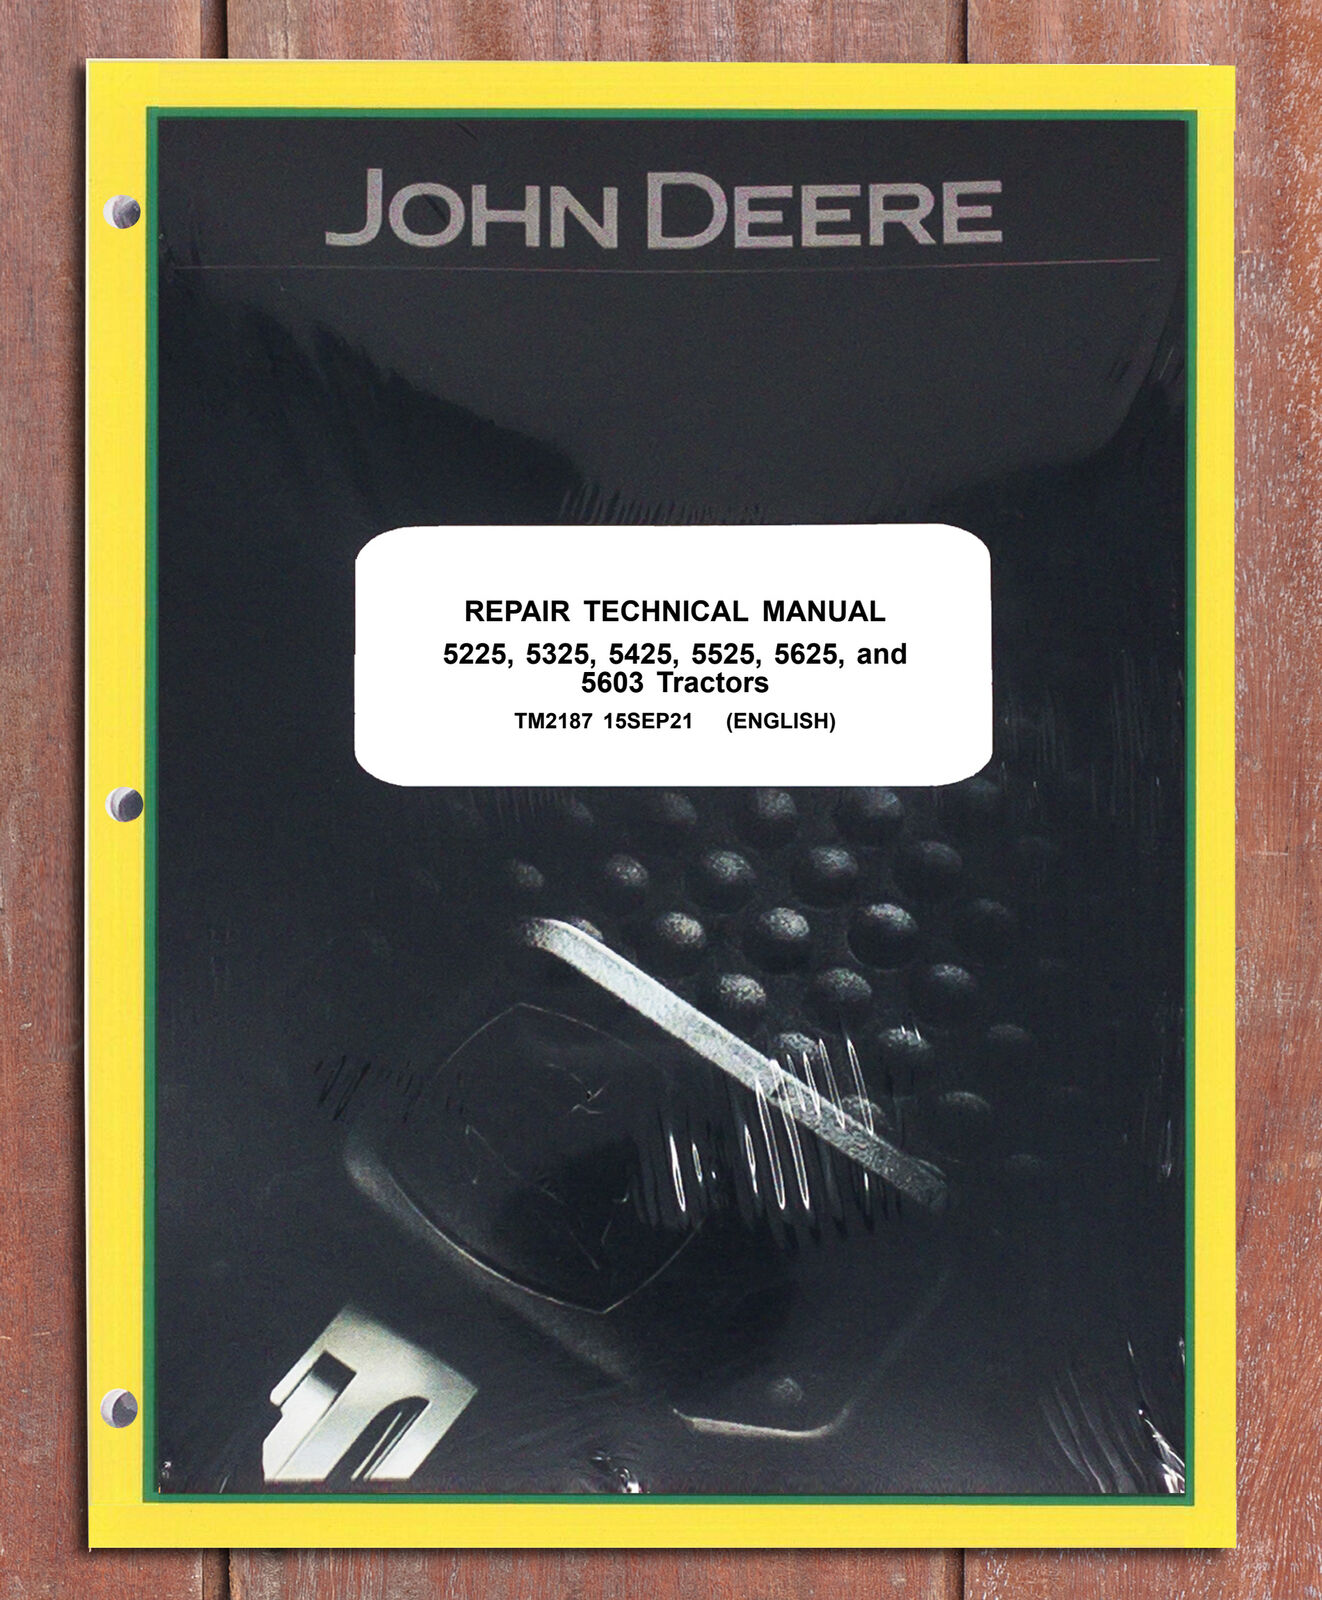 John Deere 5225 5325 5425 5525 5625 5603 Tractor Repair Service Manual - TM2187